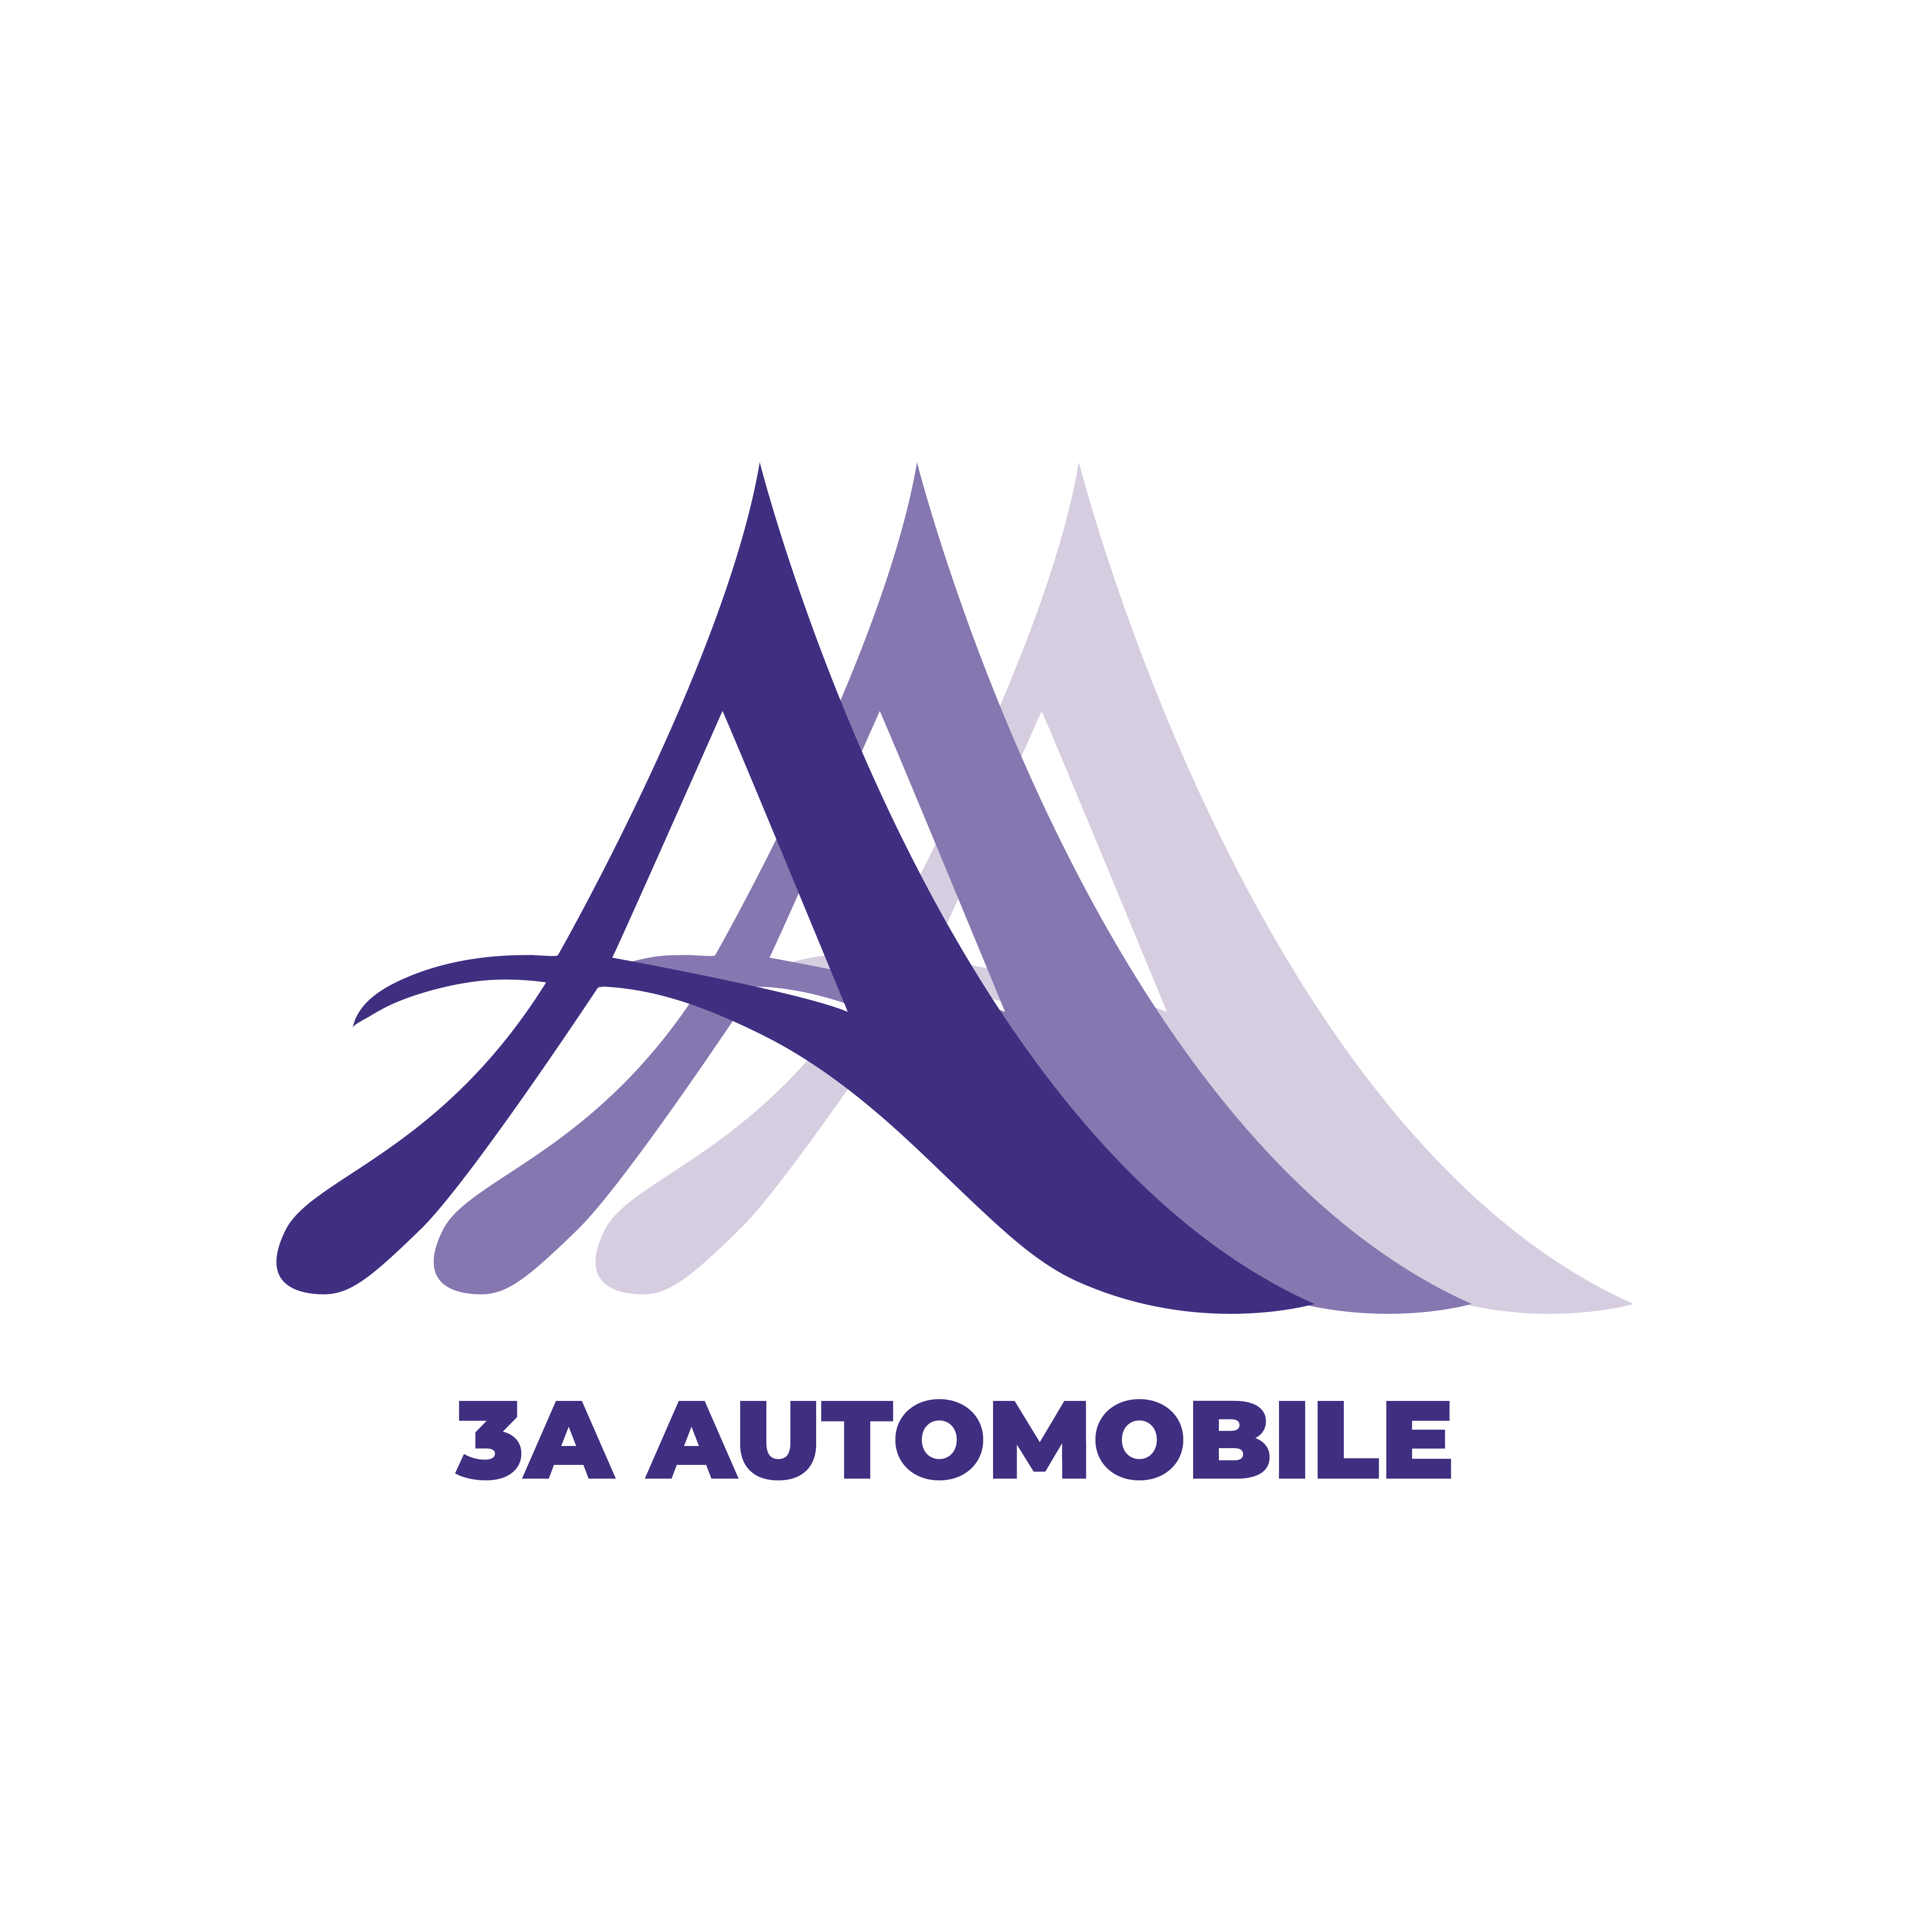 3A Automobile